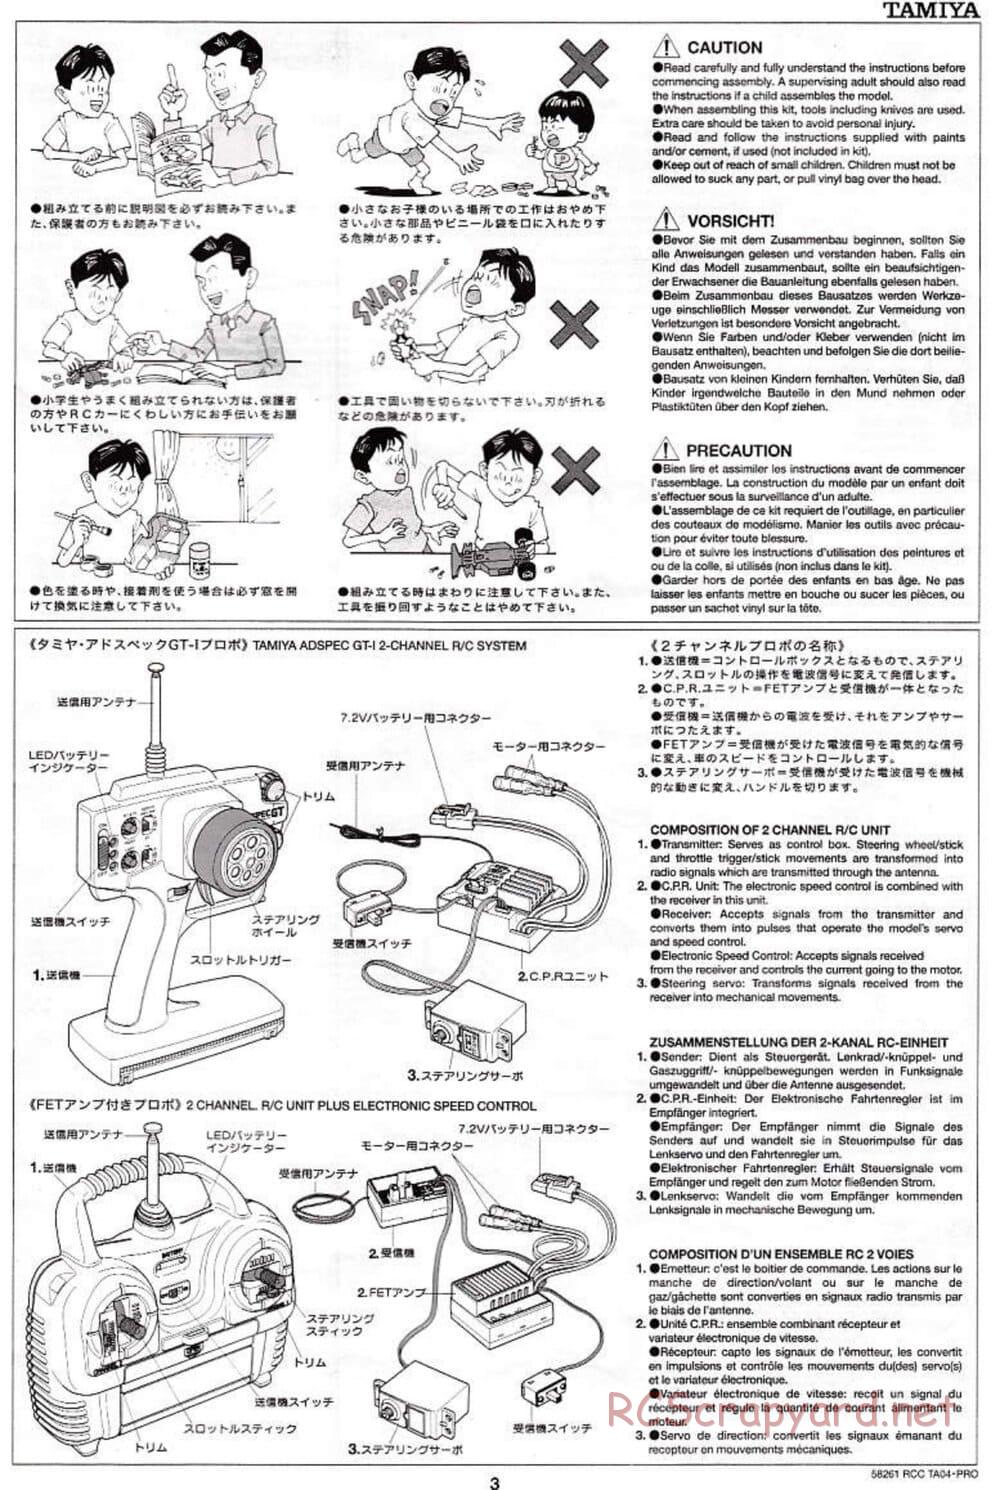 Tamiya - TA-04 Pro Chassis - Manual - Page 3